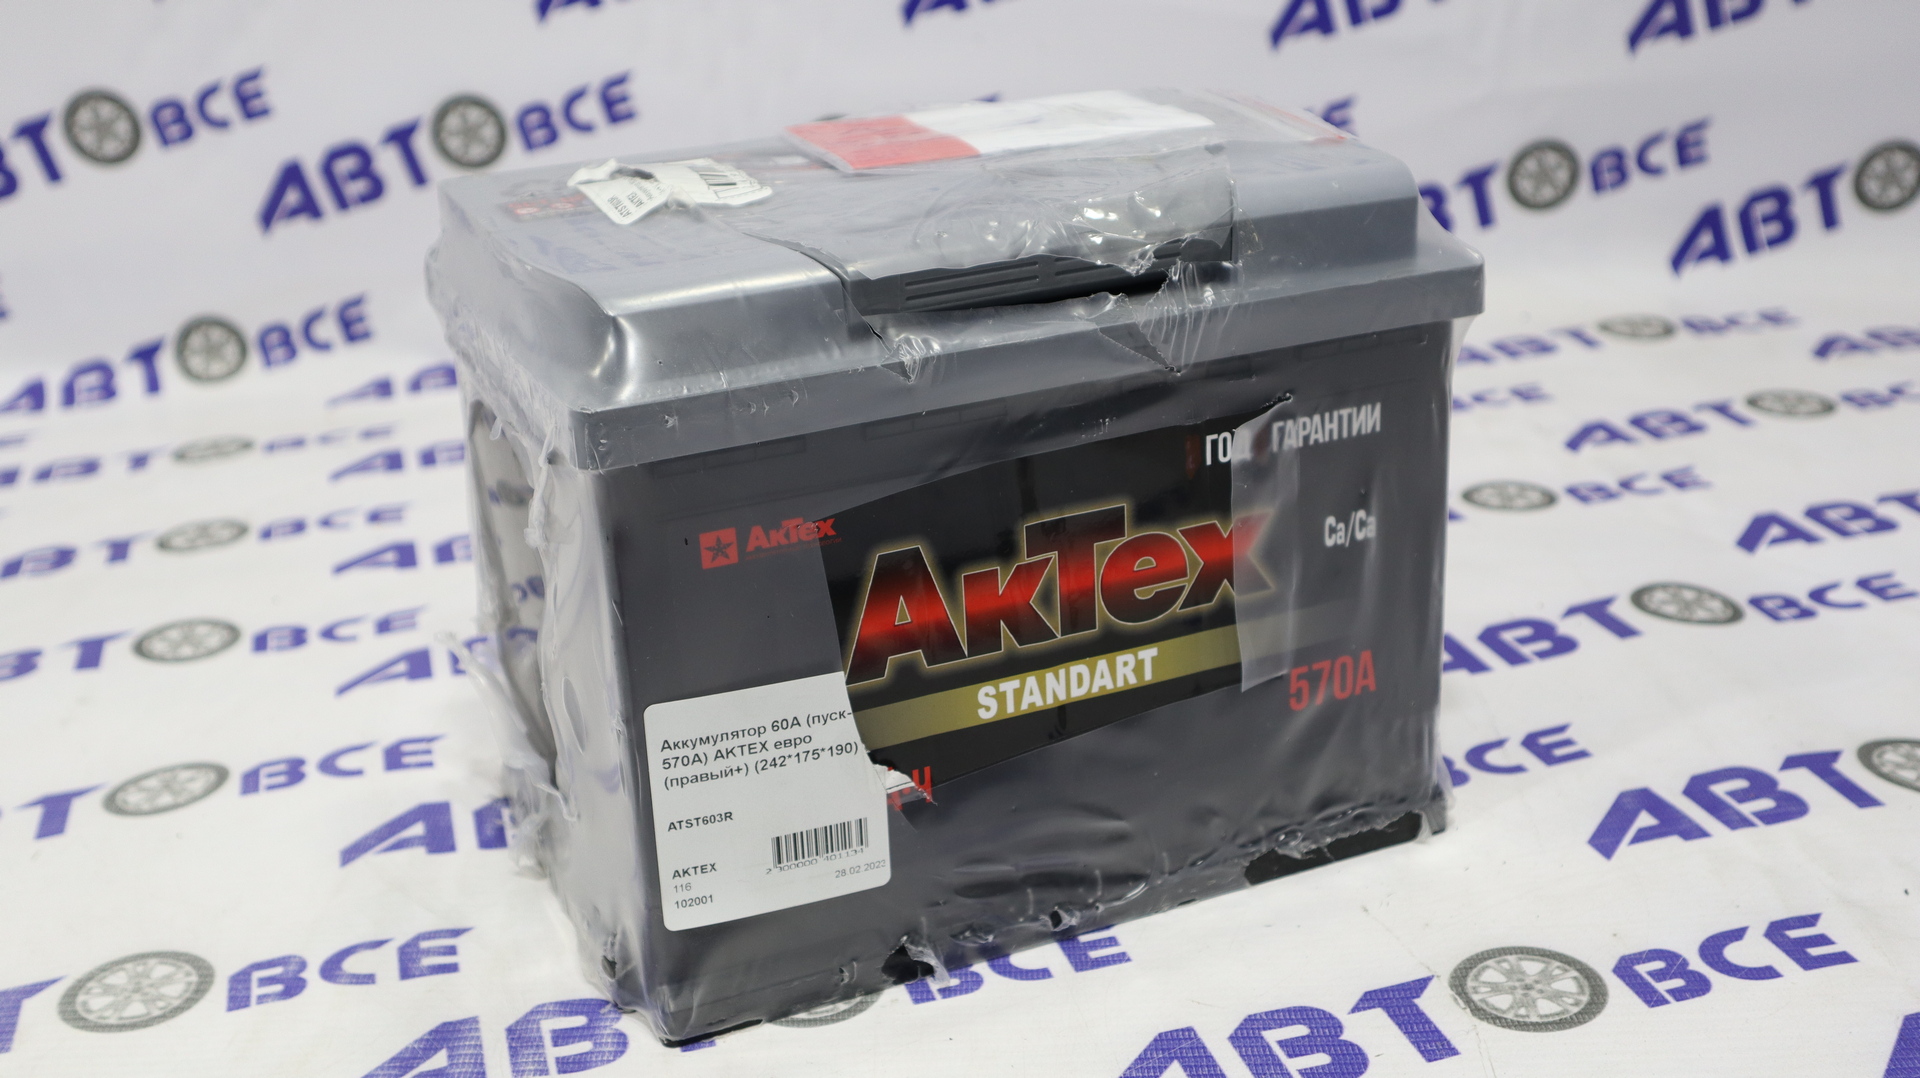 Аккумулятор 60А (пуск- 570A) AKTEX евро (правый+) (242*175*190)